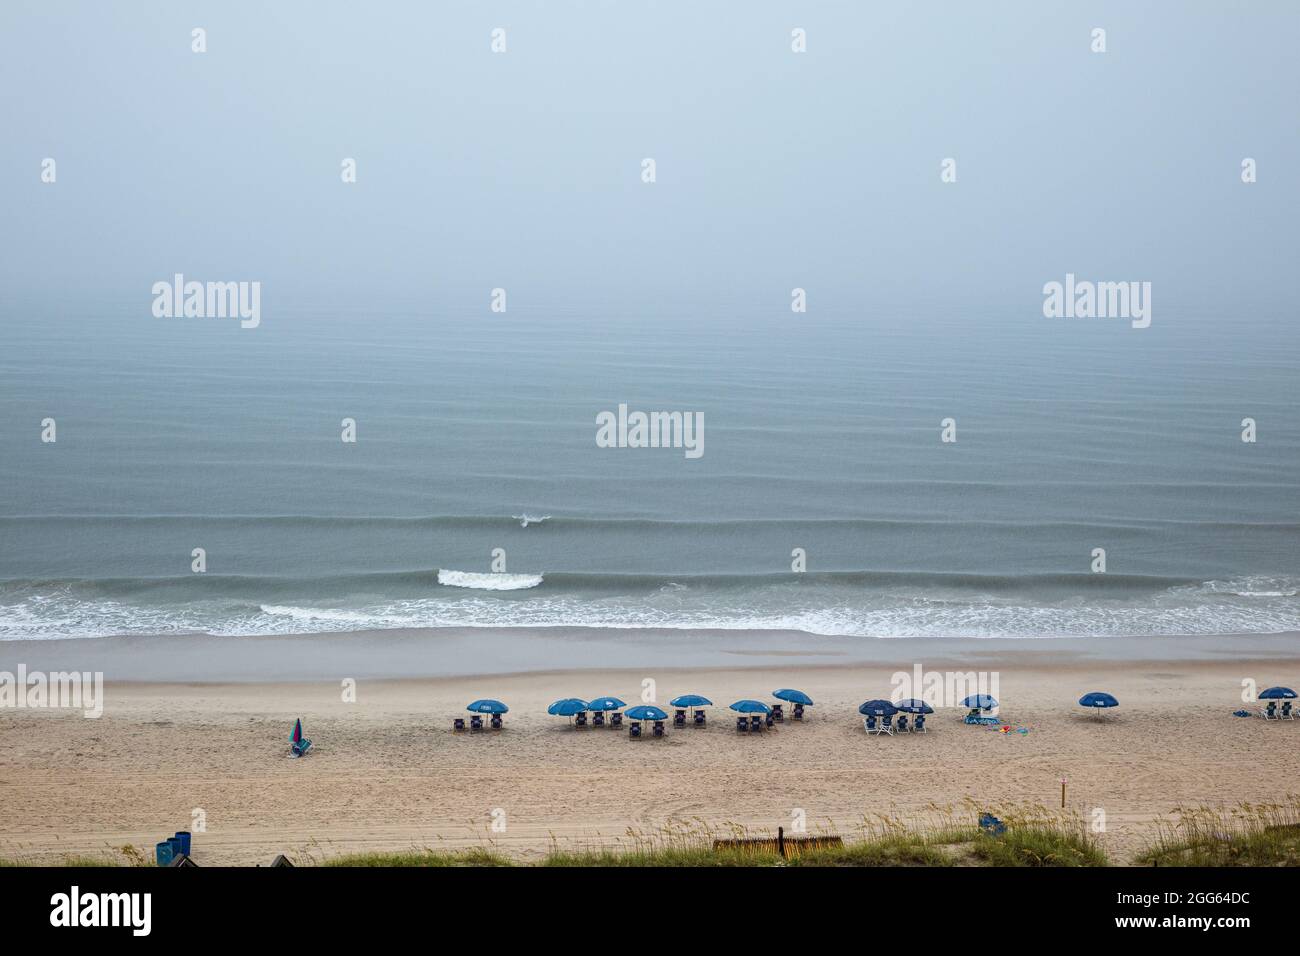 A thunderstorm in Carolina Beach, North Carolina. Stock Photo